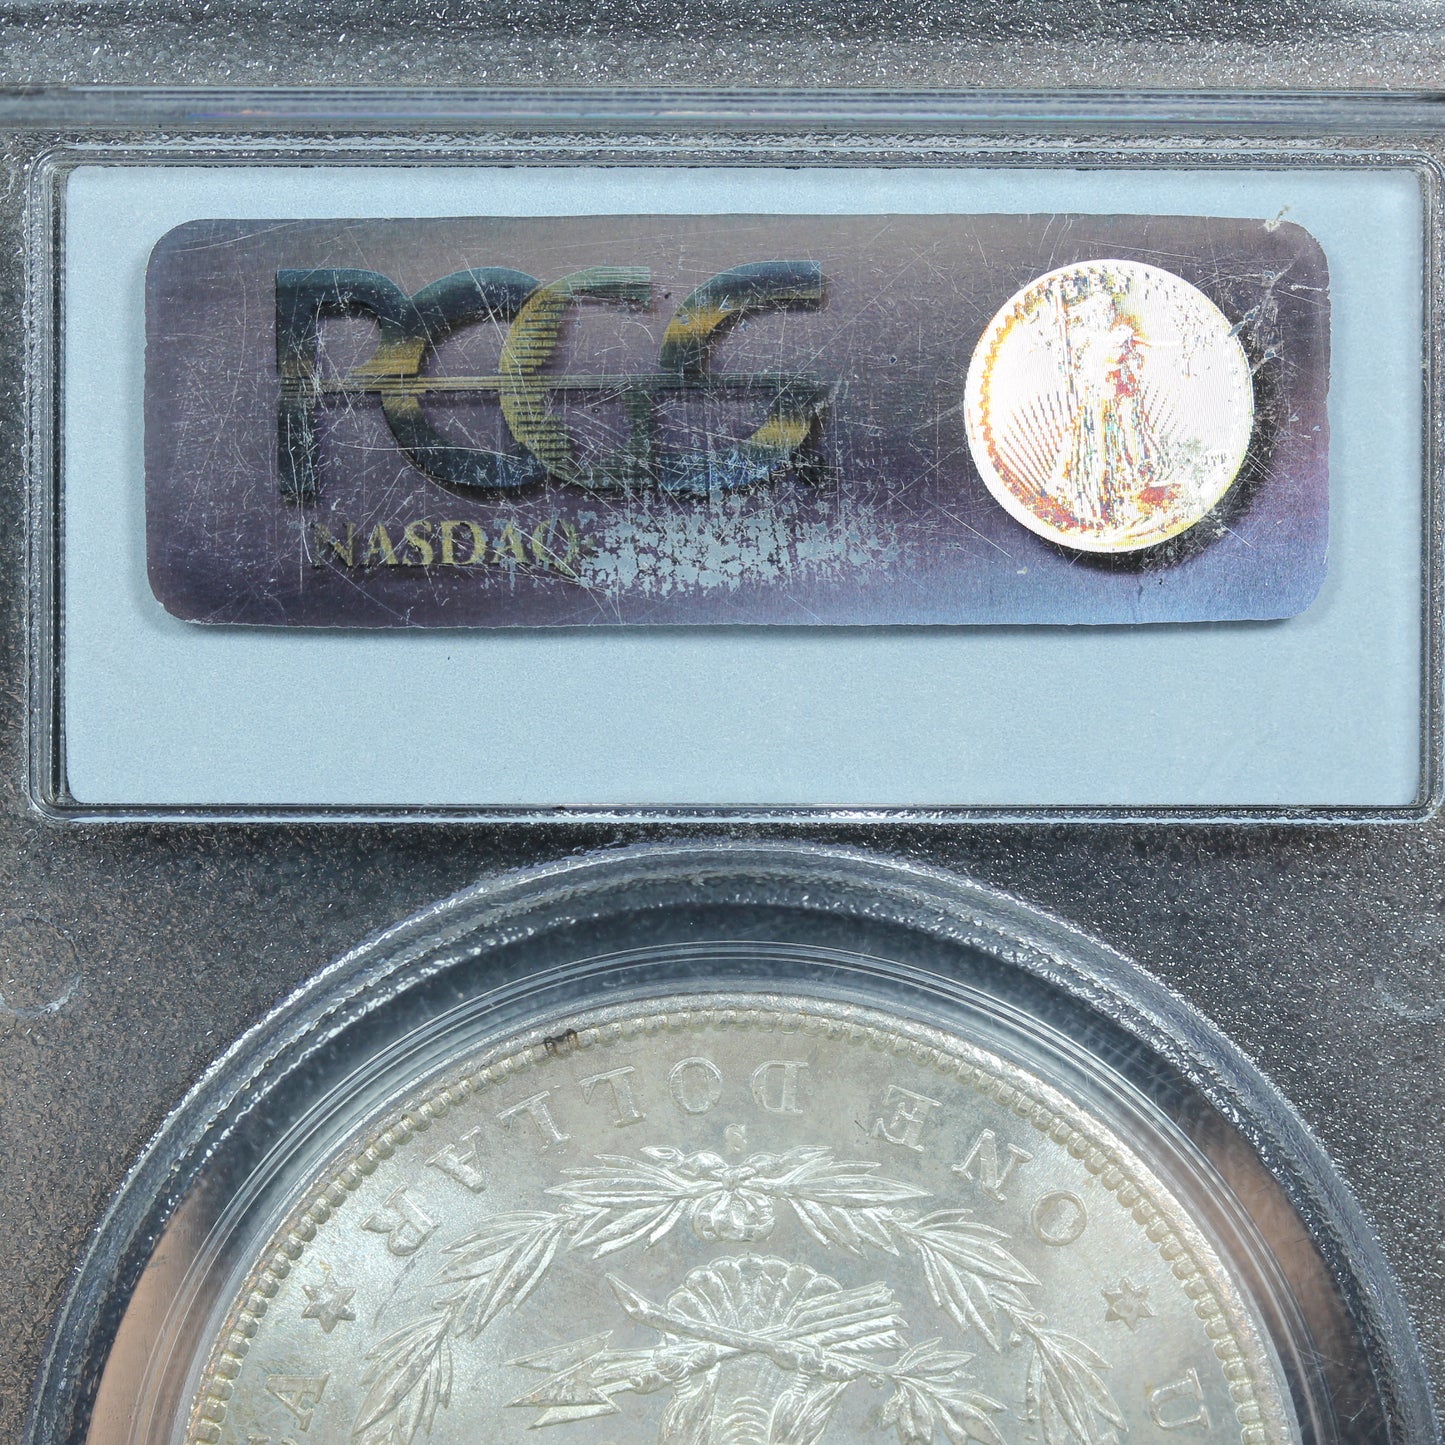 1881 S Morgan Dollar PCGS MS62 Beautiful Reverse Rainbow Toning